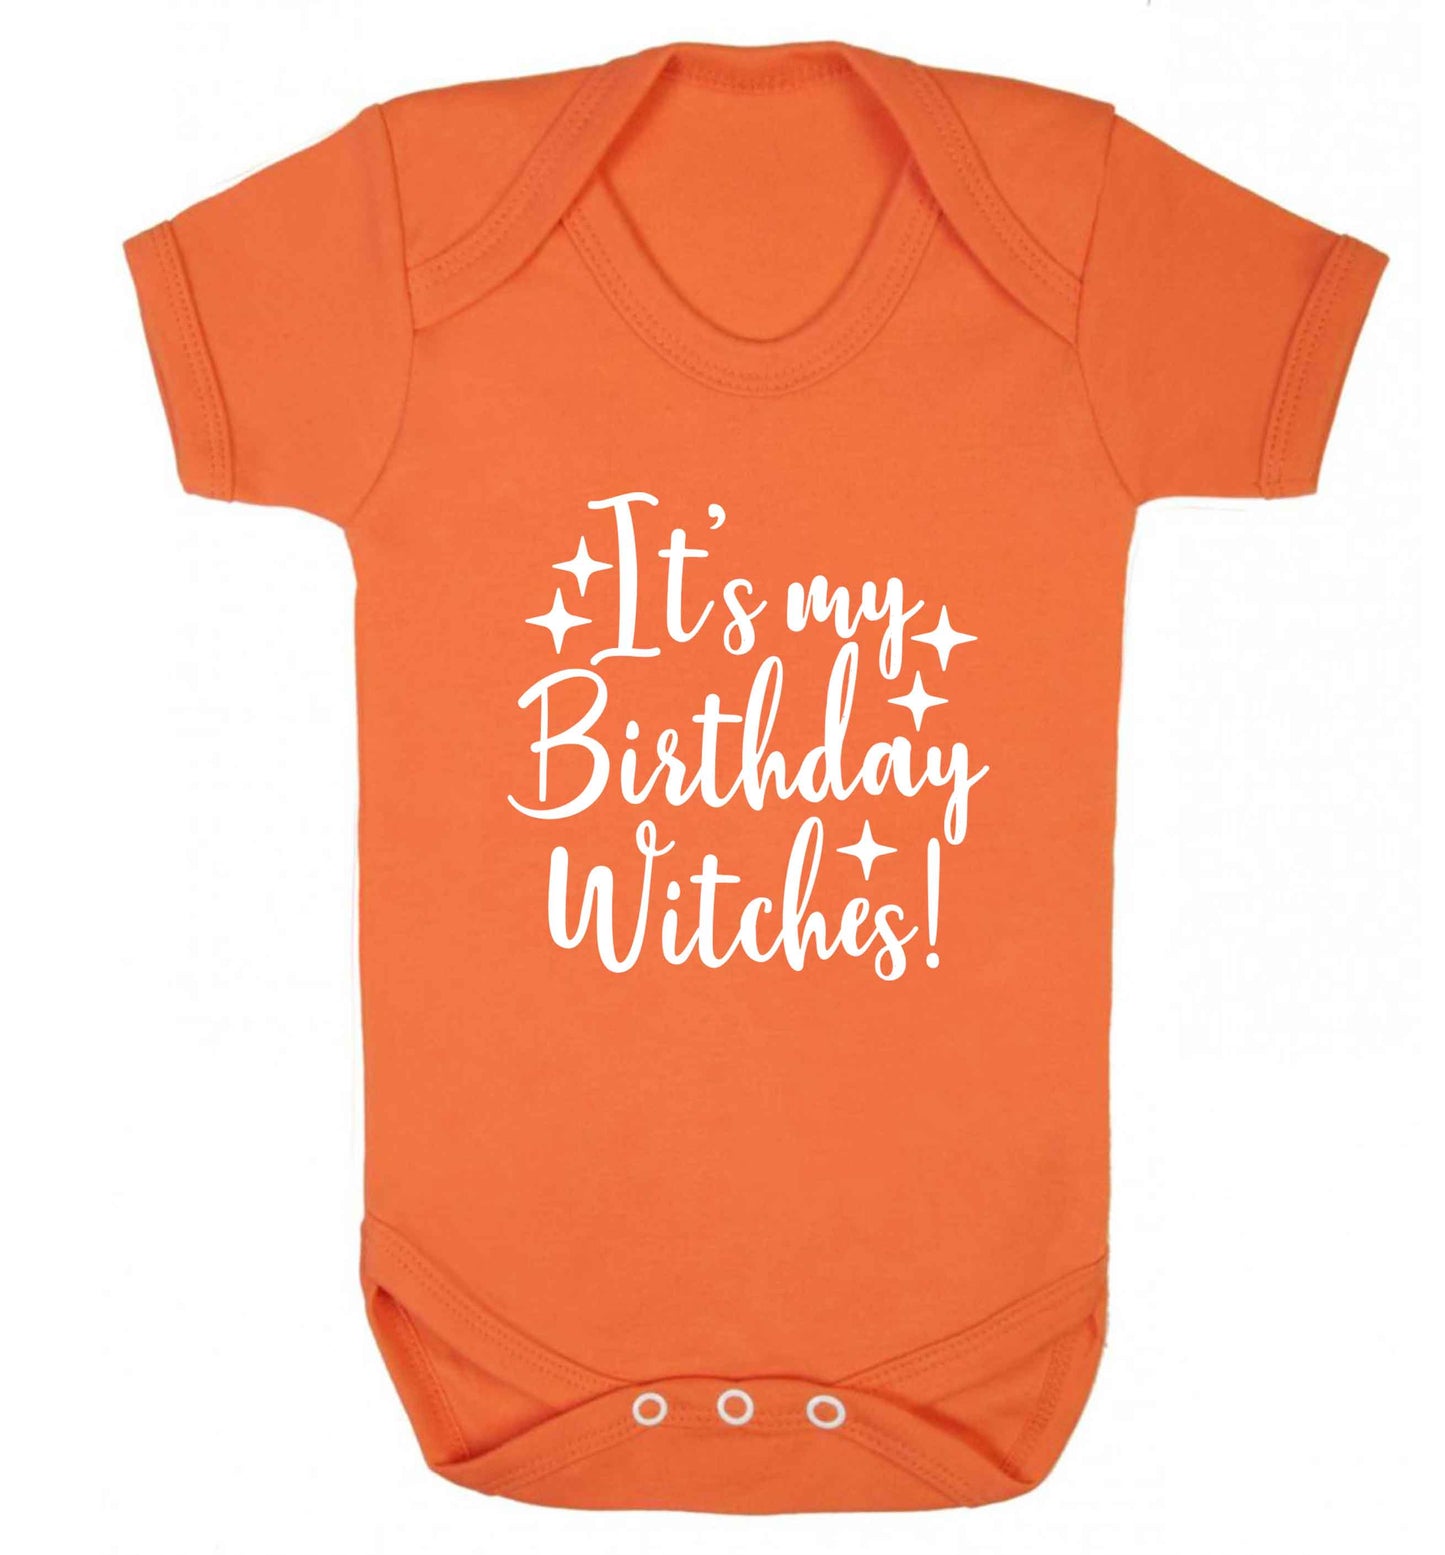 It's my birthday witches!baby vest orange 18-24 months